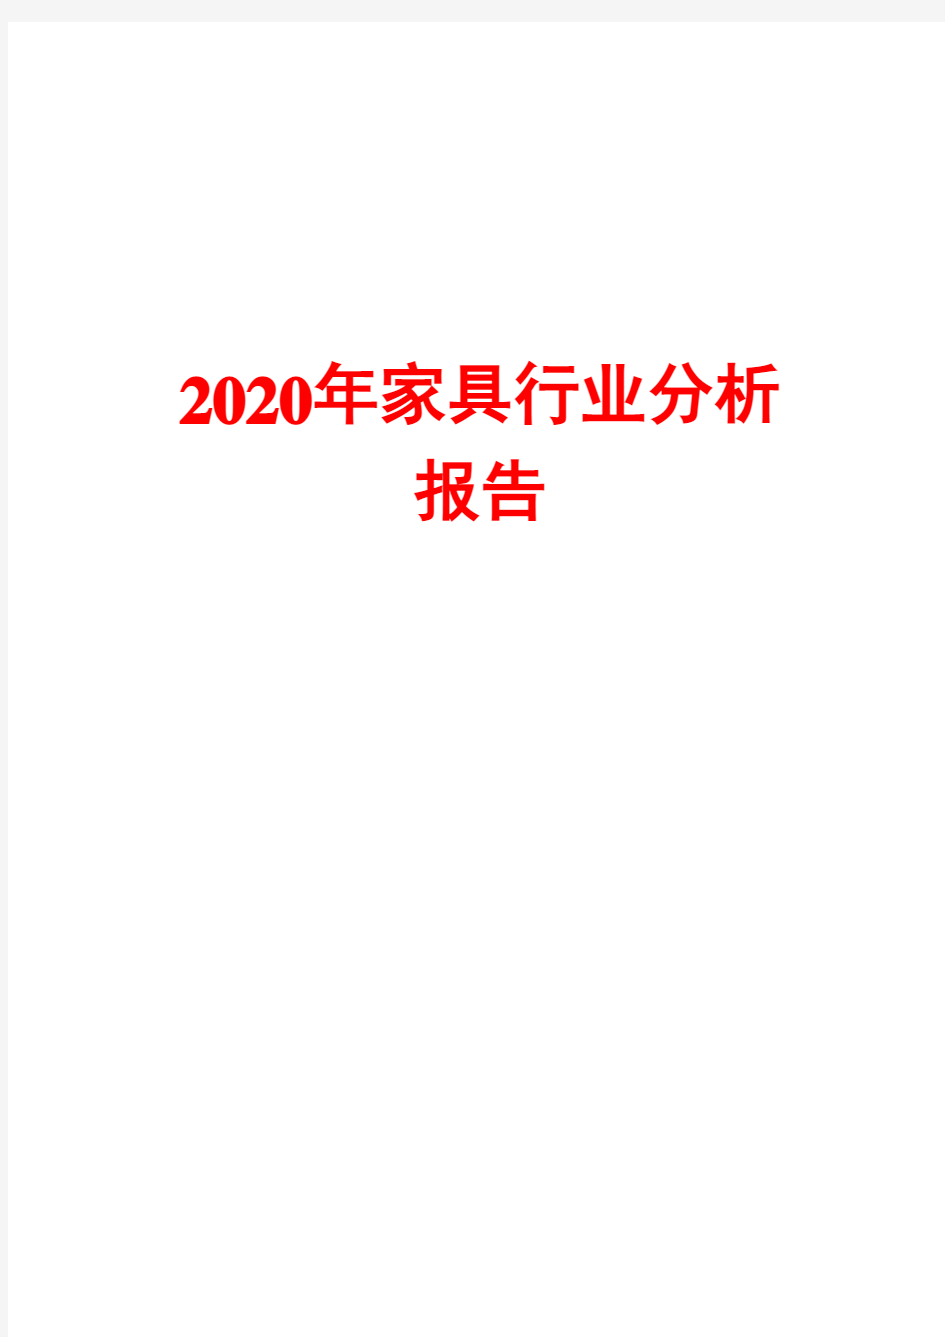 2020年家具行业分析报告